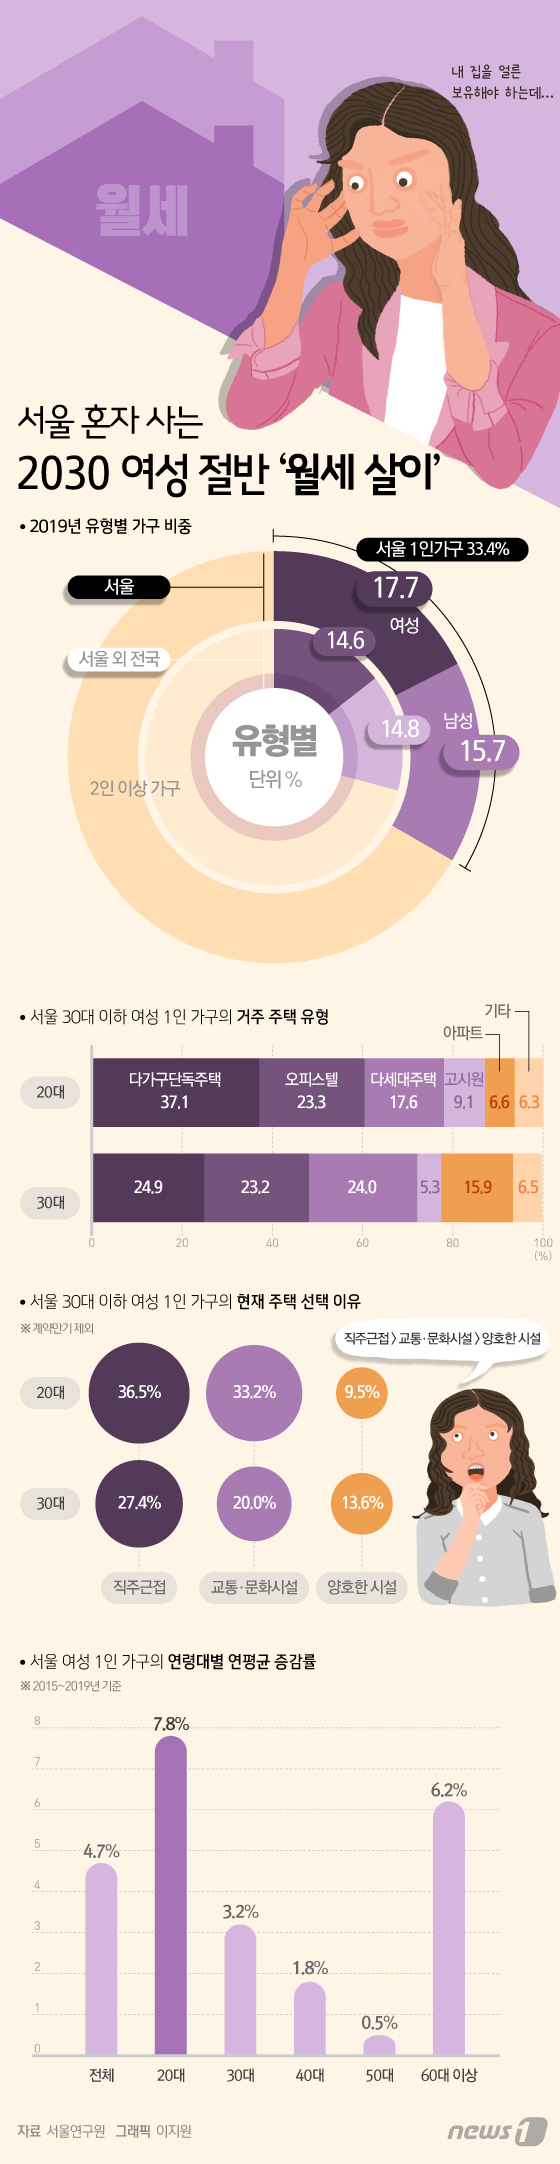 [그래픽뉴스] 서울 혼자 사는 2030 여성 절반 \'월세 살이\'